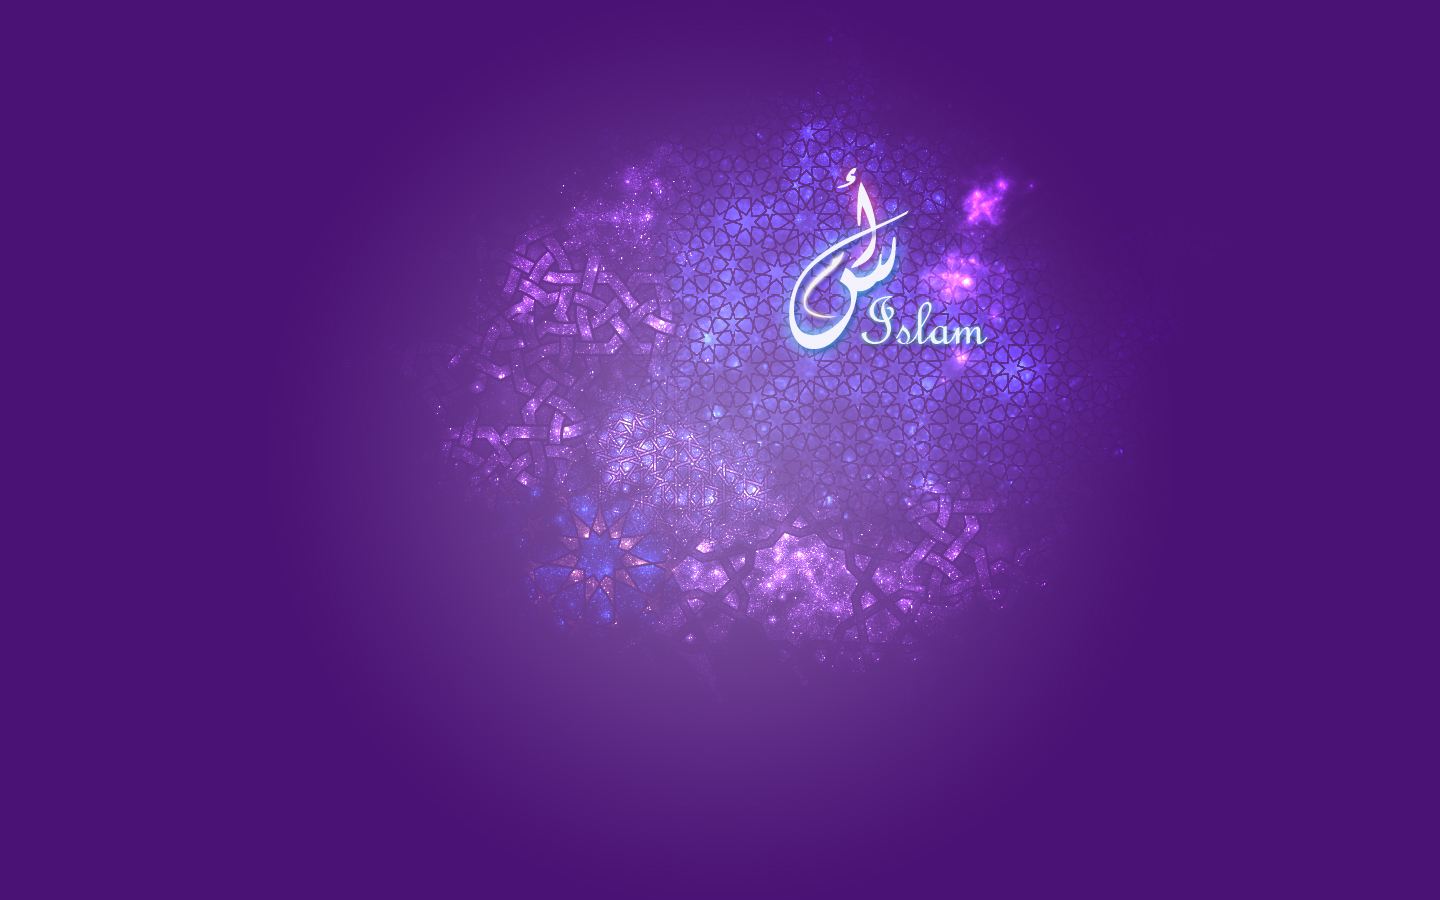 islamische liebe tapete,violett,lila,blau,text,licht